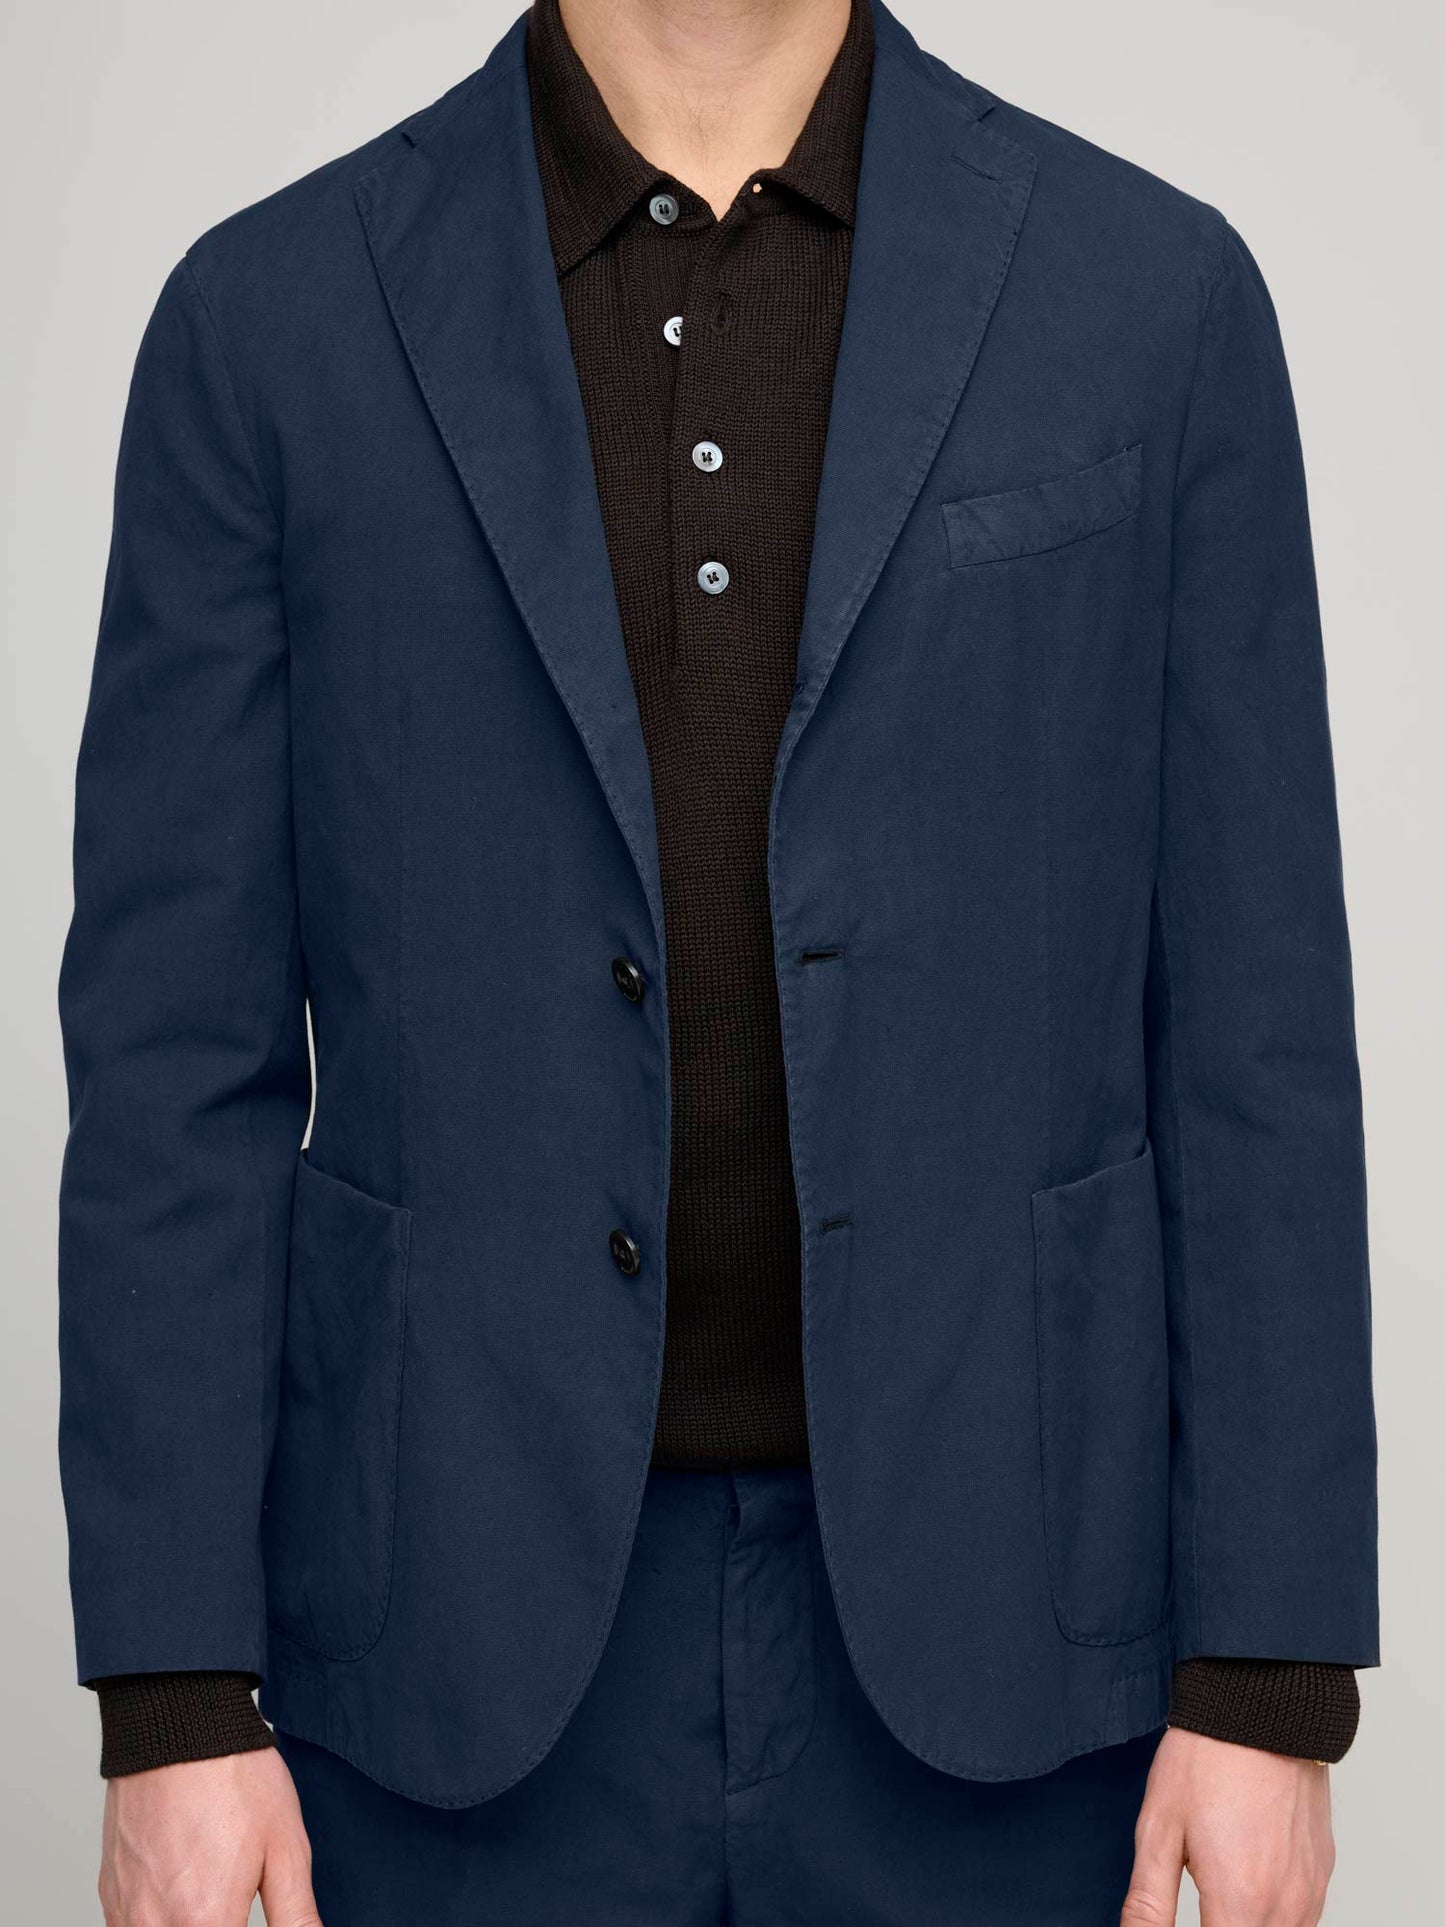 K Jacket Cotton & Linen, Navy